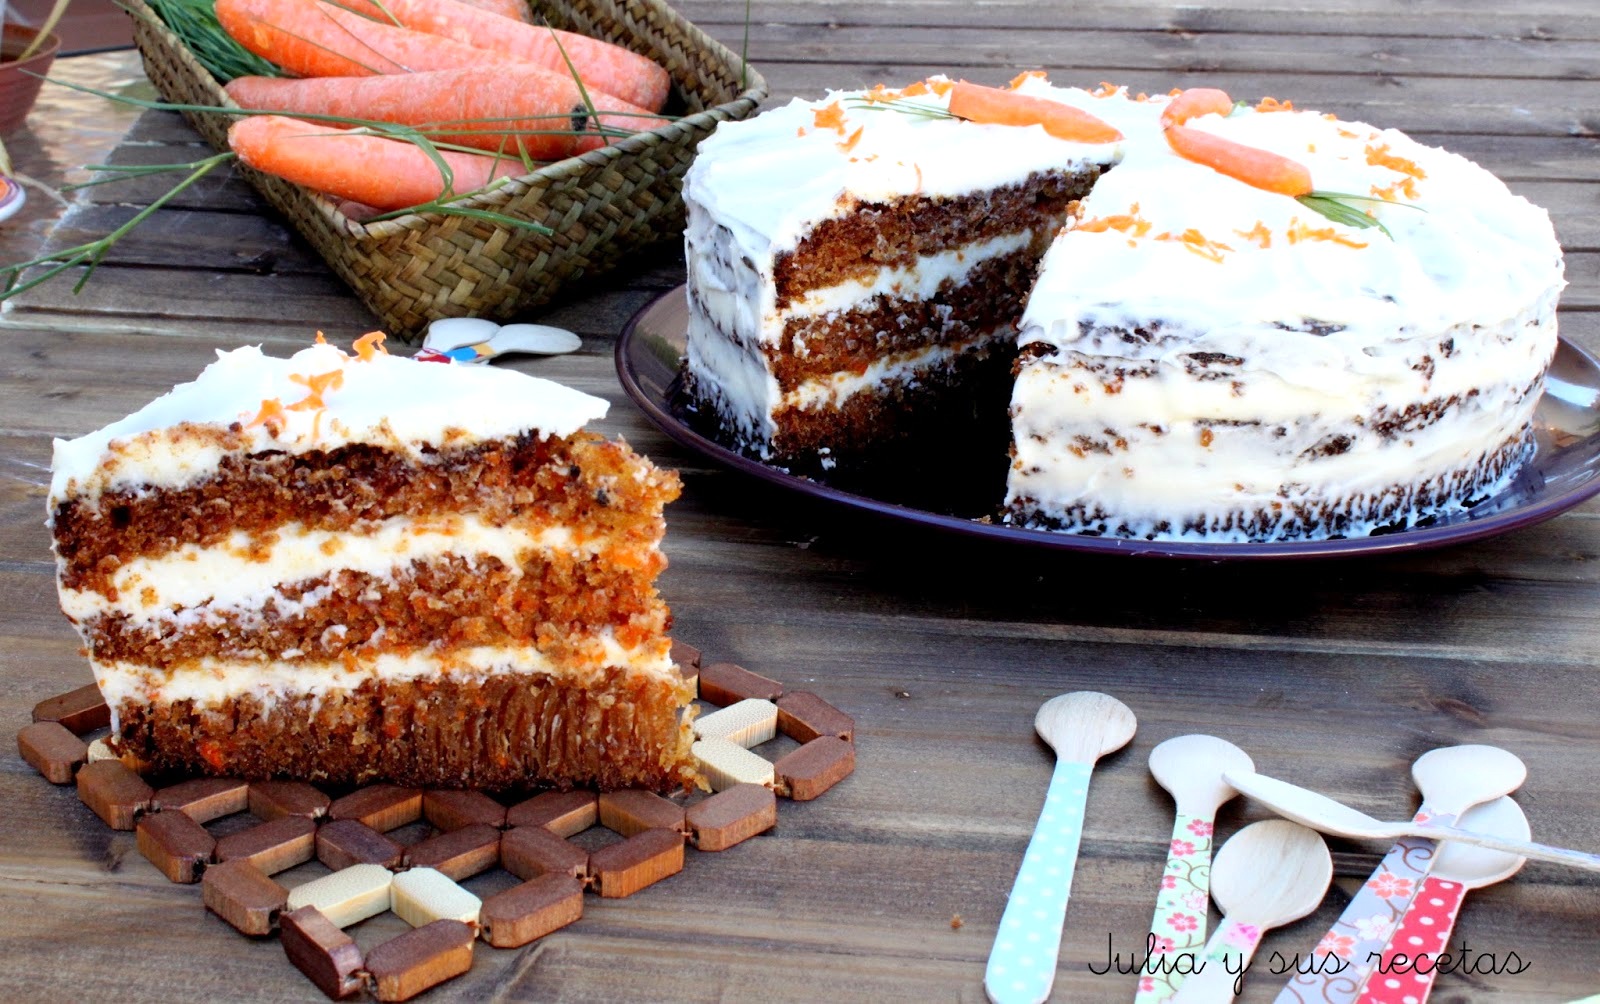 JULIA Y SUS RECETAS: Carrot cake piña. Tarta de zanahorias y piña